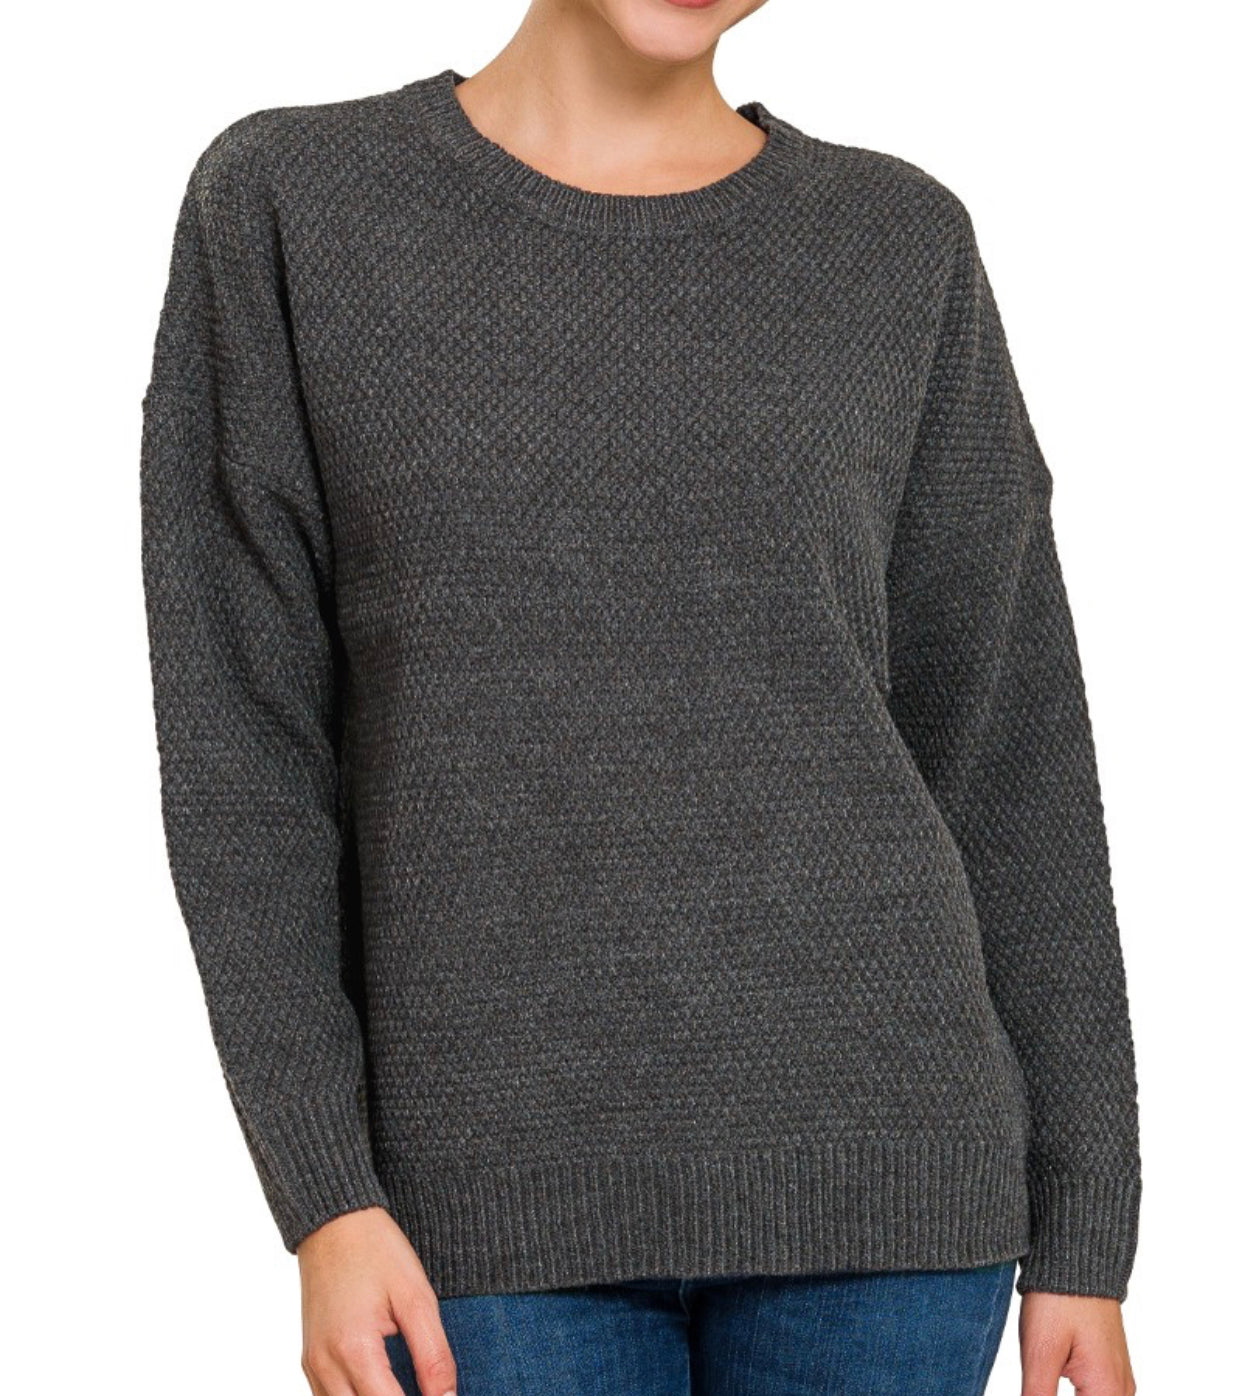 Carolina Basic Knit Sweater Charcoal